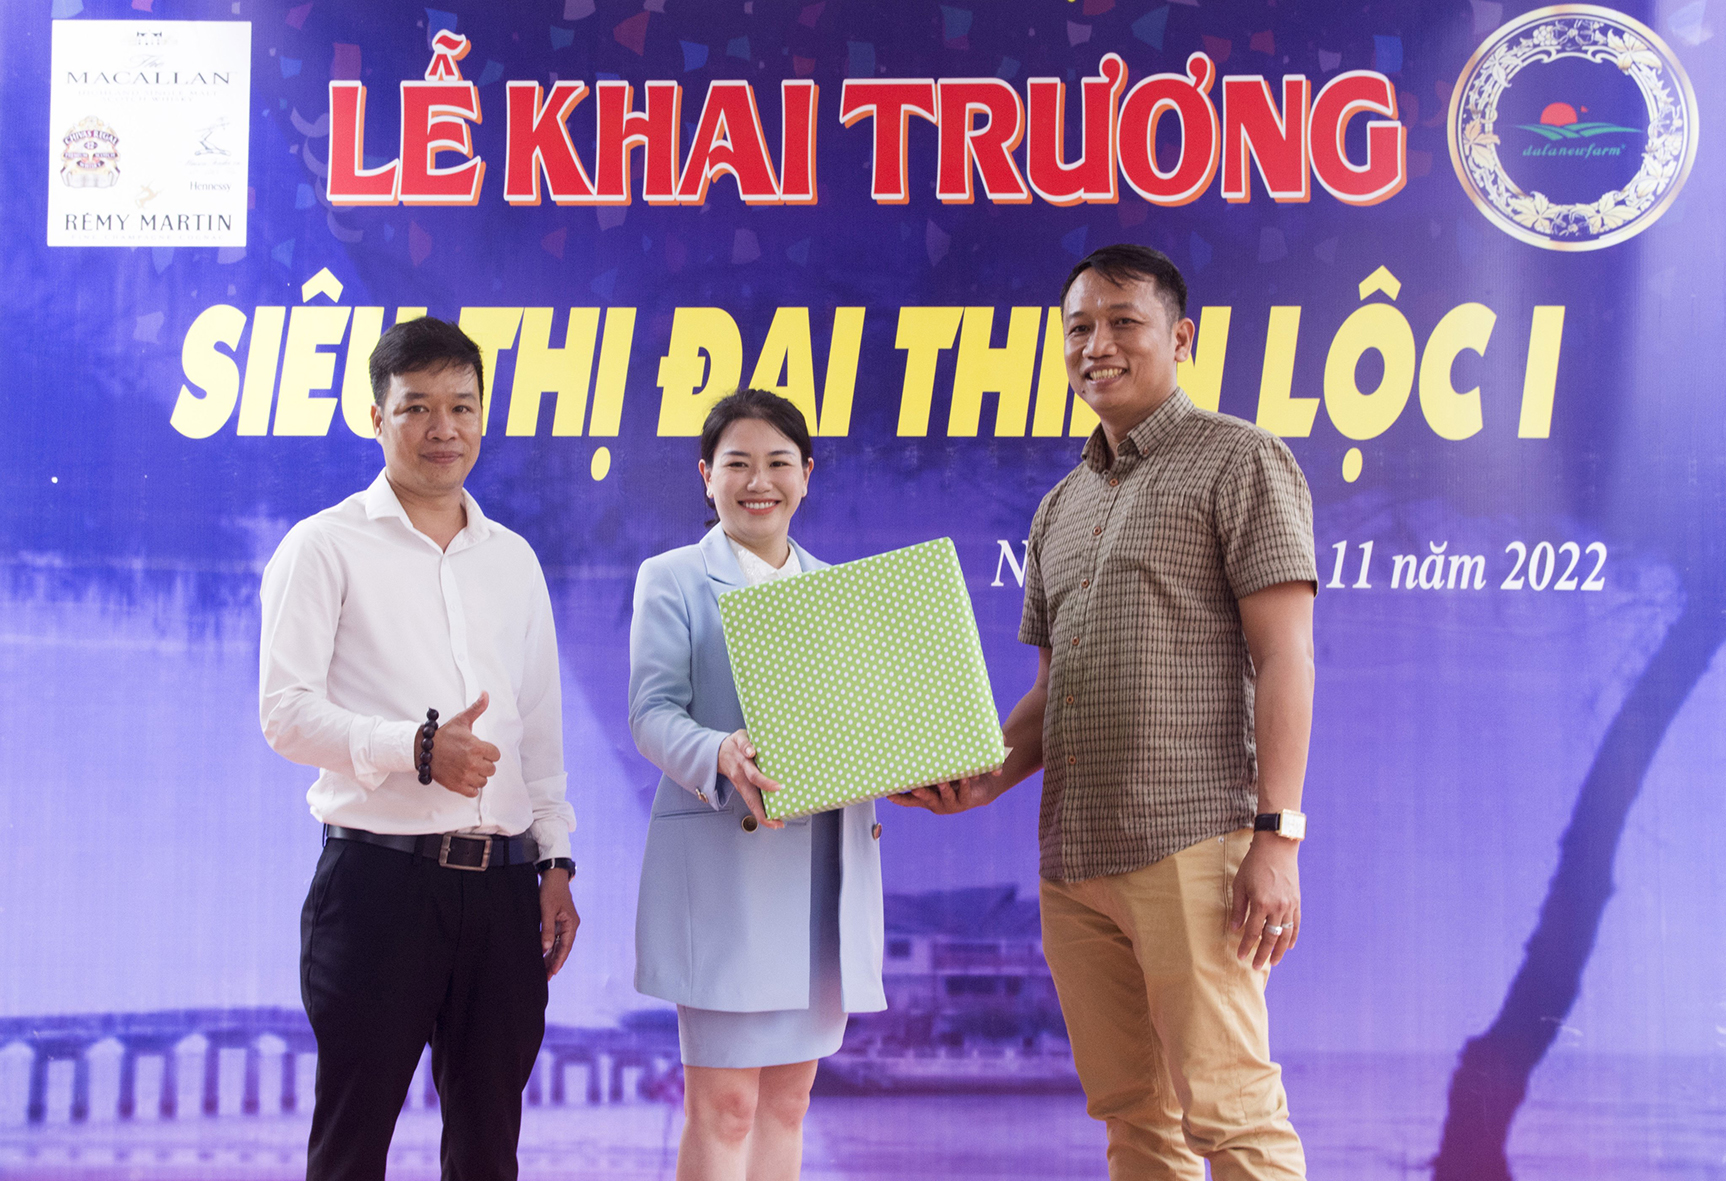 Đối tác tặng quà chúc mừng bà Nguyễn Thị Thùy Trâm, Giám đốc Công ty TNHH TM - DV Đại Thiện Lộc (đứng giữa) tại lễ khai trương)